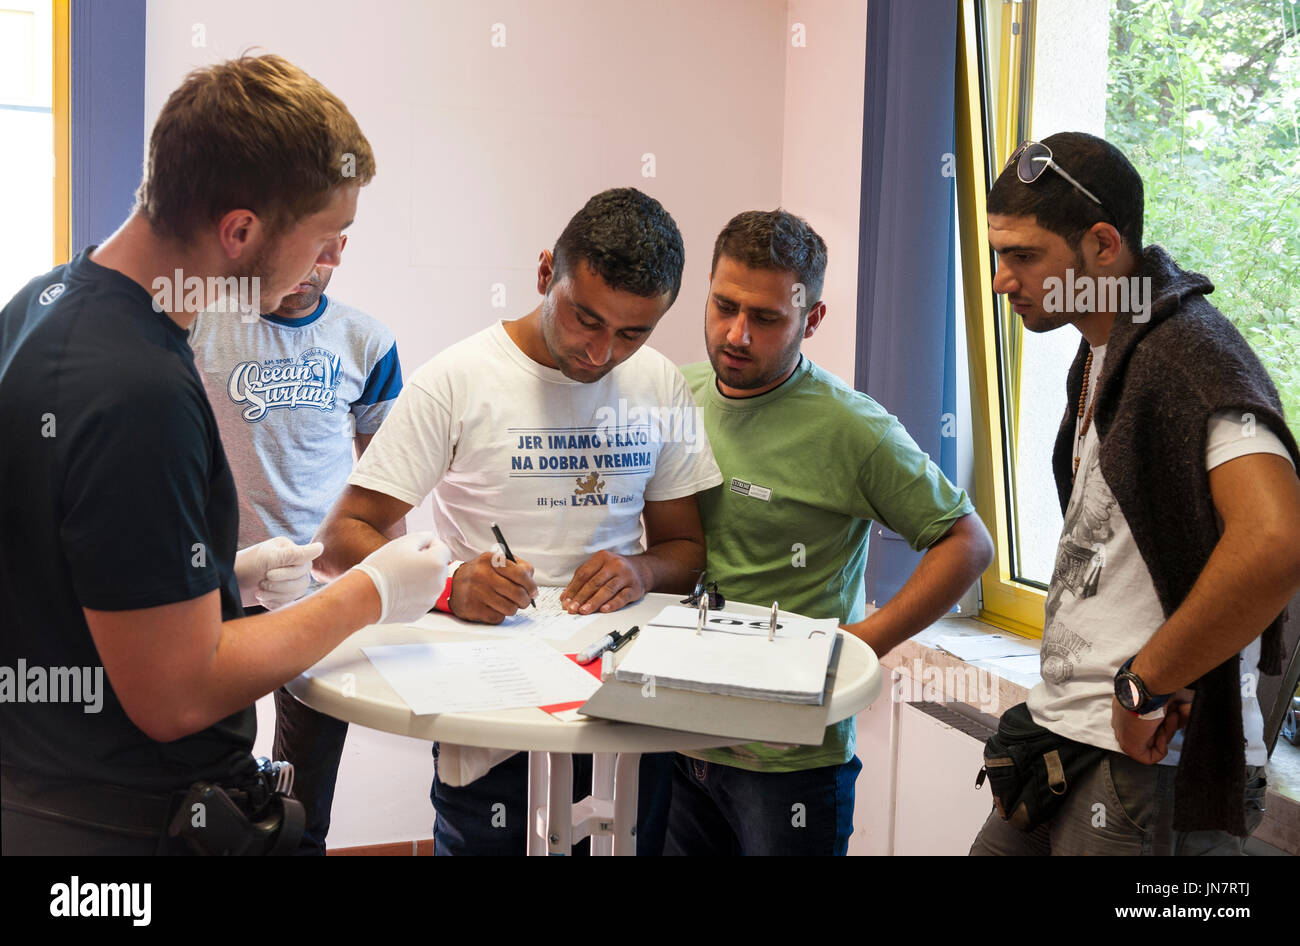 Passau, Germania - August 1th, 2015: un funzionario di polizia richiede la firma di un uomo alla sua registrazione presso il centro di registrazione per i migranti Foto Stock